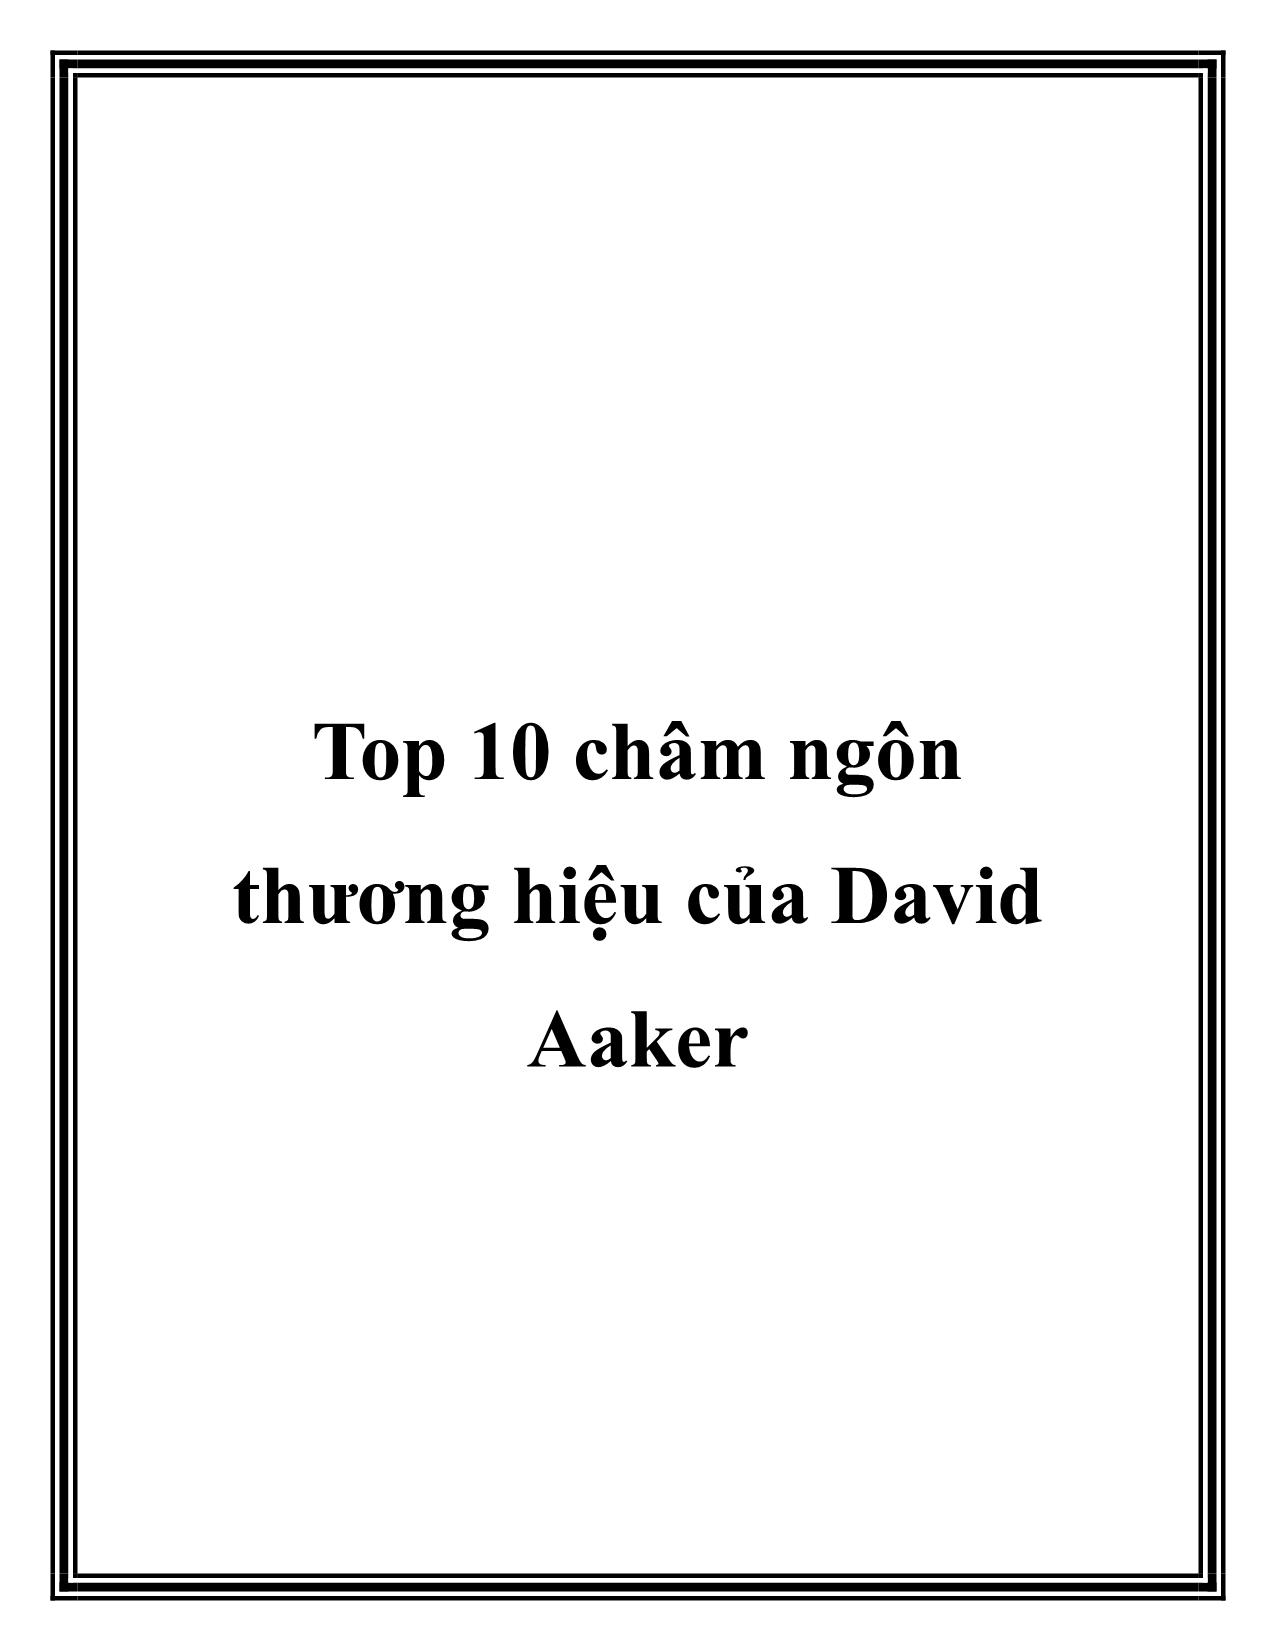 Top 10 châm ngôn thương hiệu của David Aaker trang 1